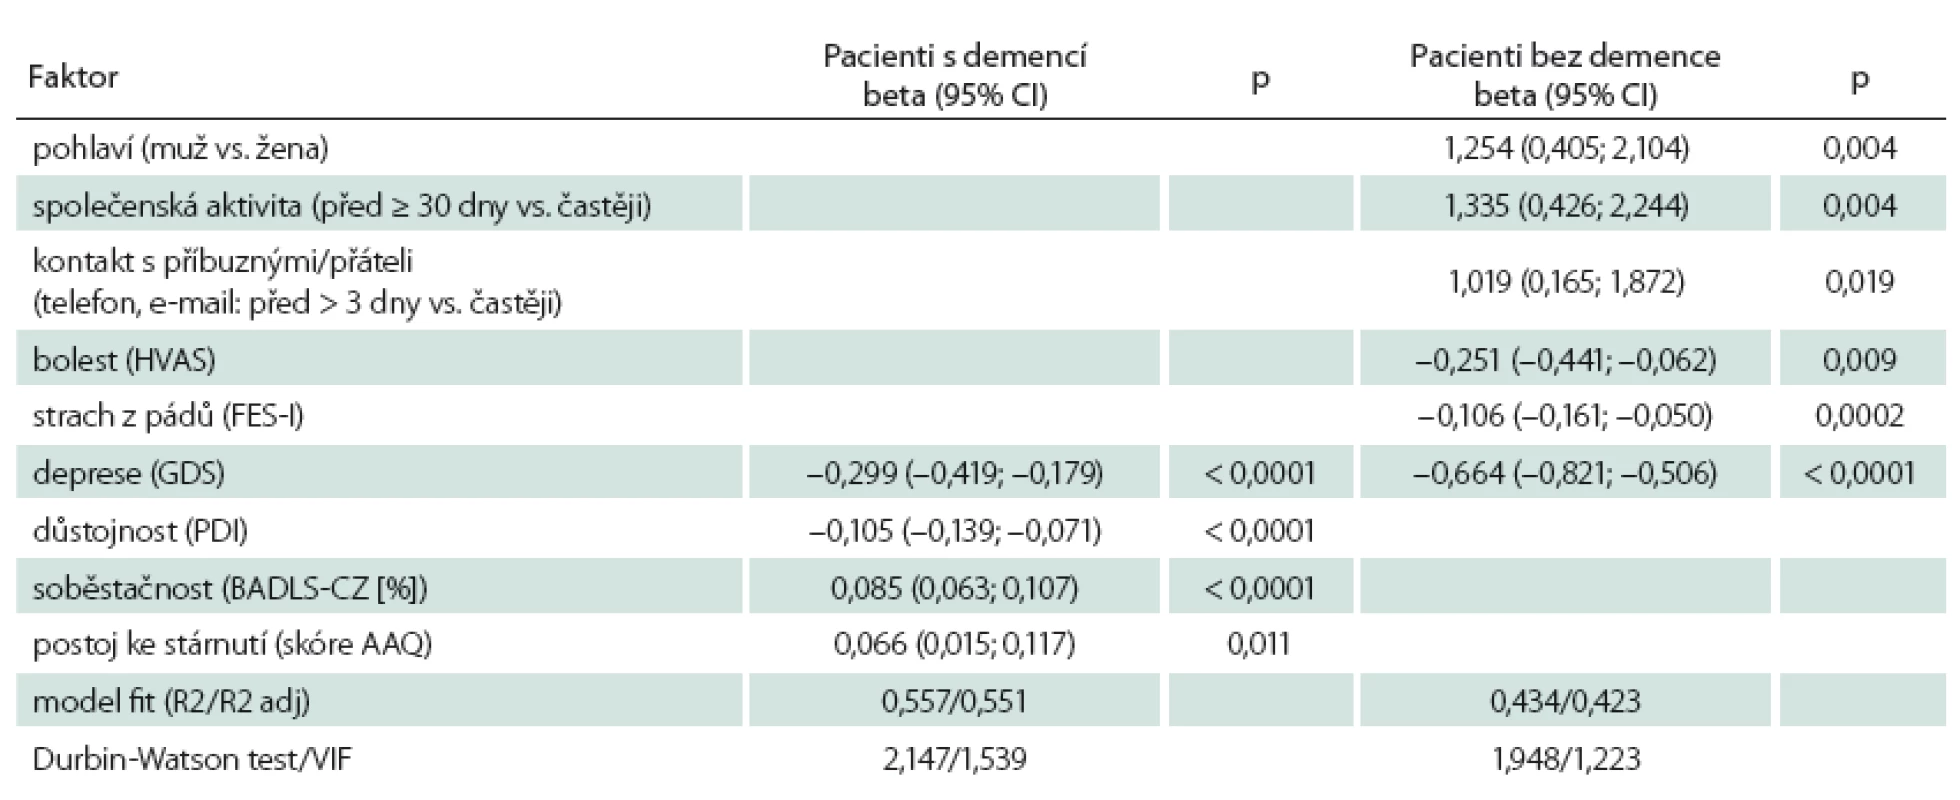 Faktory ovlivňující kvalitu života pacientů s demencí a bez demence.